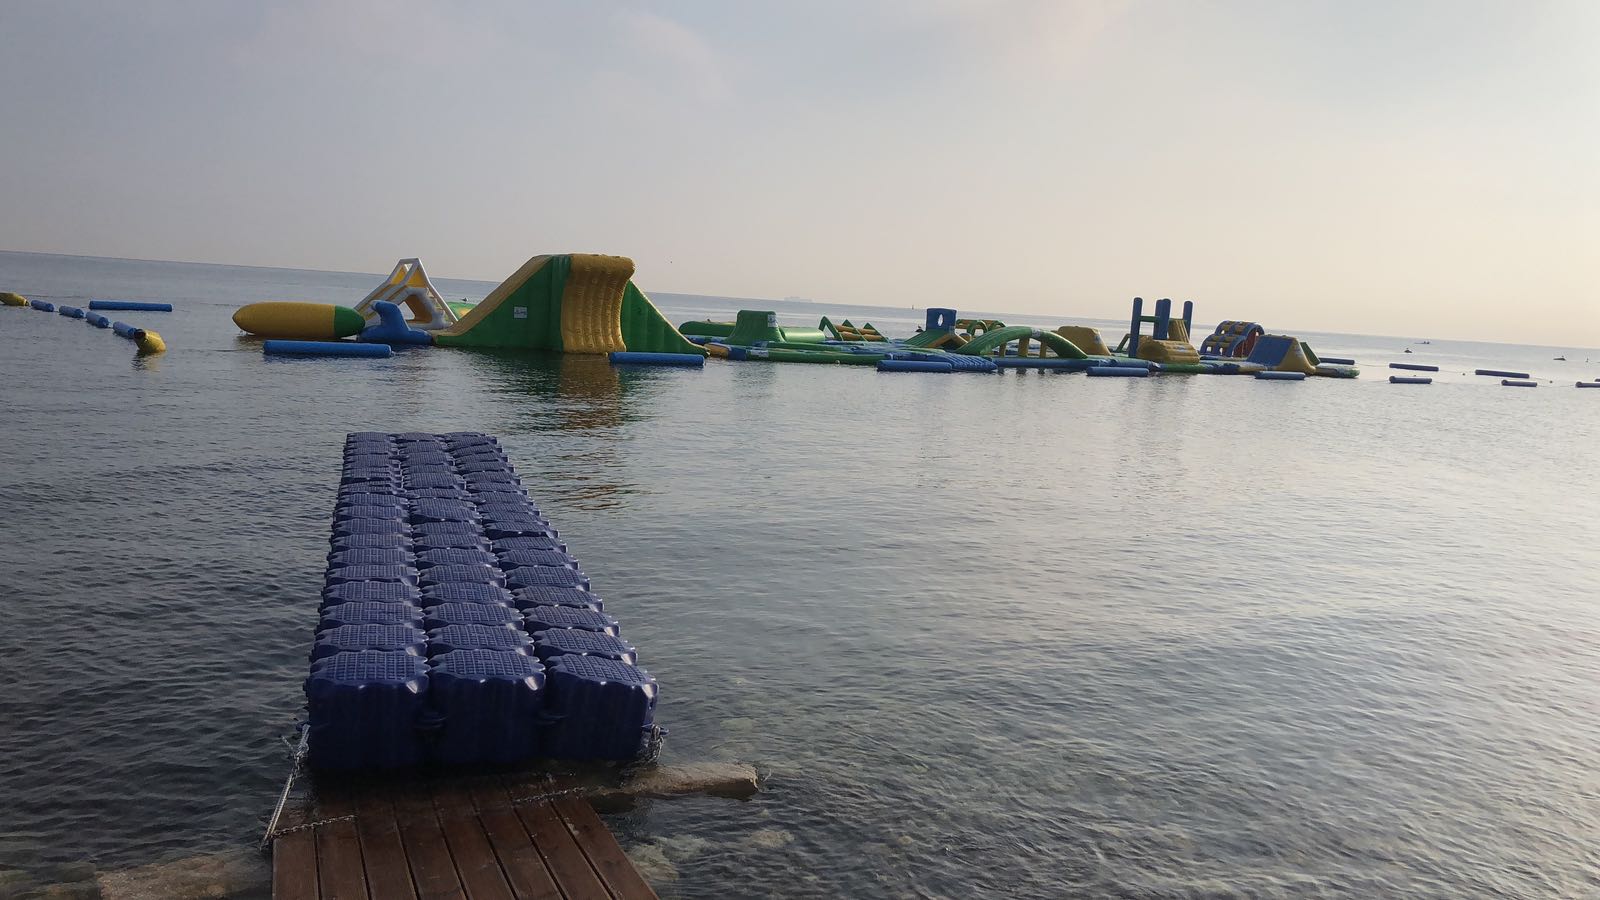 Bari domenica inaugurazione del nuovo parco acquatico al lungomare sud, tanto divertimento per bambini e non